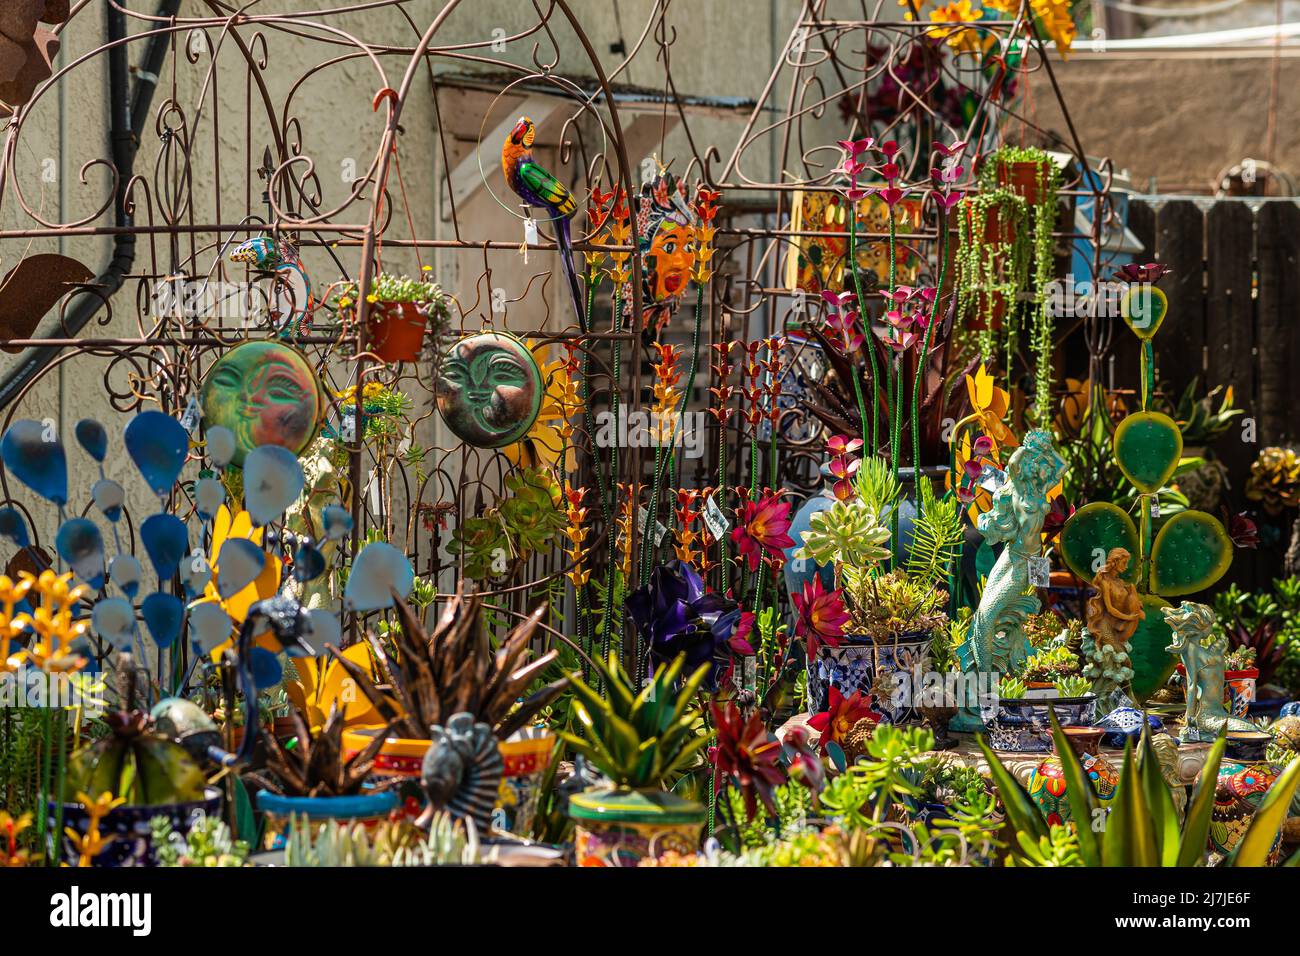 Temecula, CA, EE.UU. - 11 de abril de 2022: Barrio Old Town. Cakophonie de colores por la abundancia de decoraciones de jardín artful tales como estatuas, esculturas Foto de stock